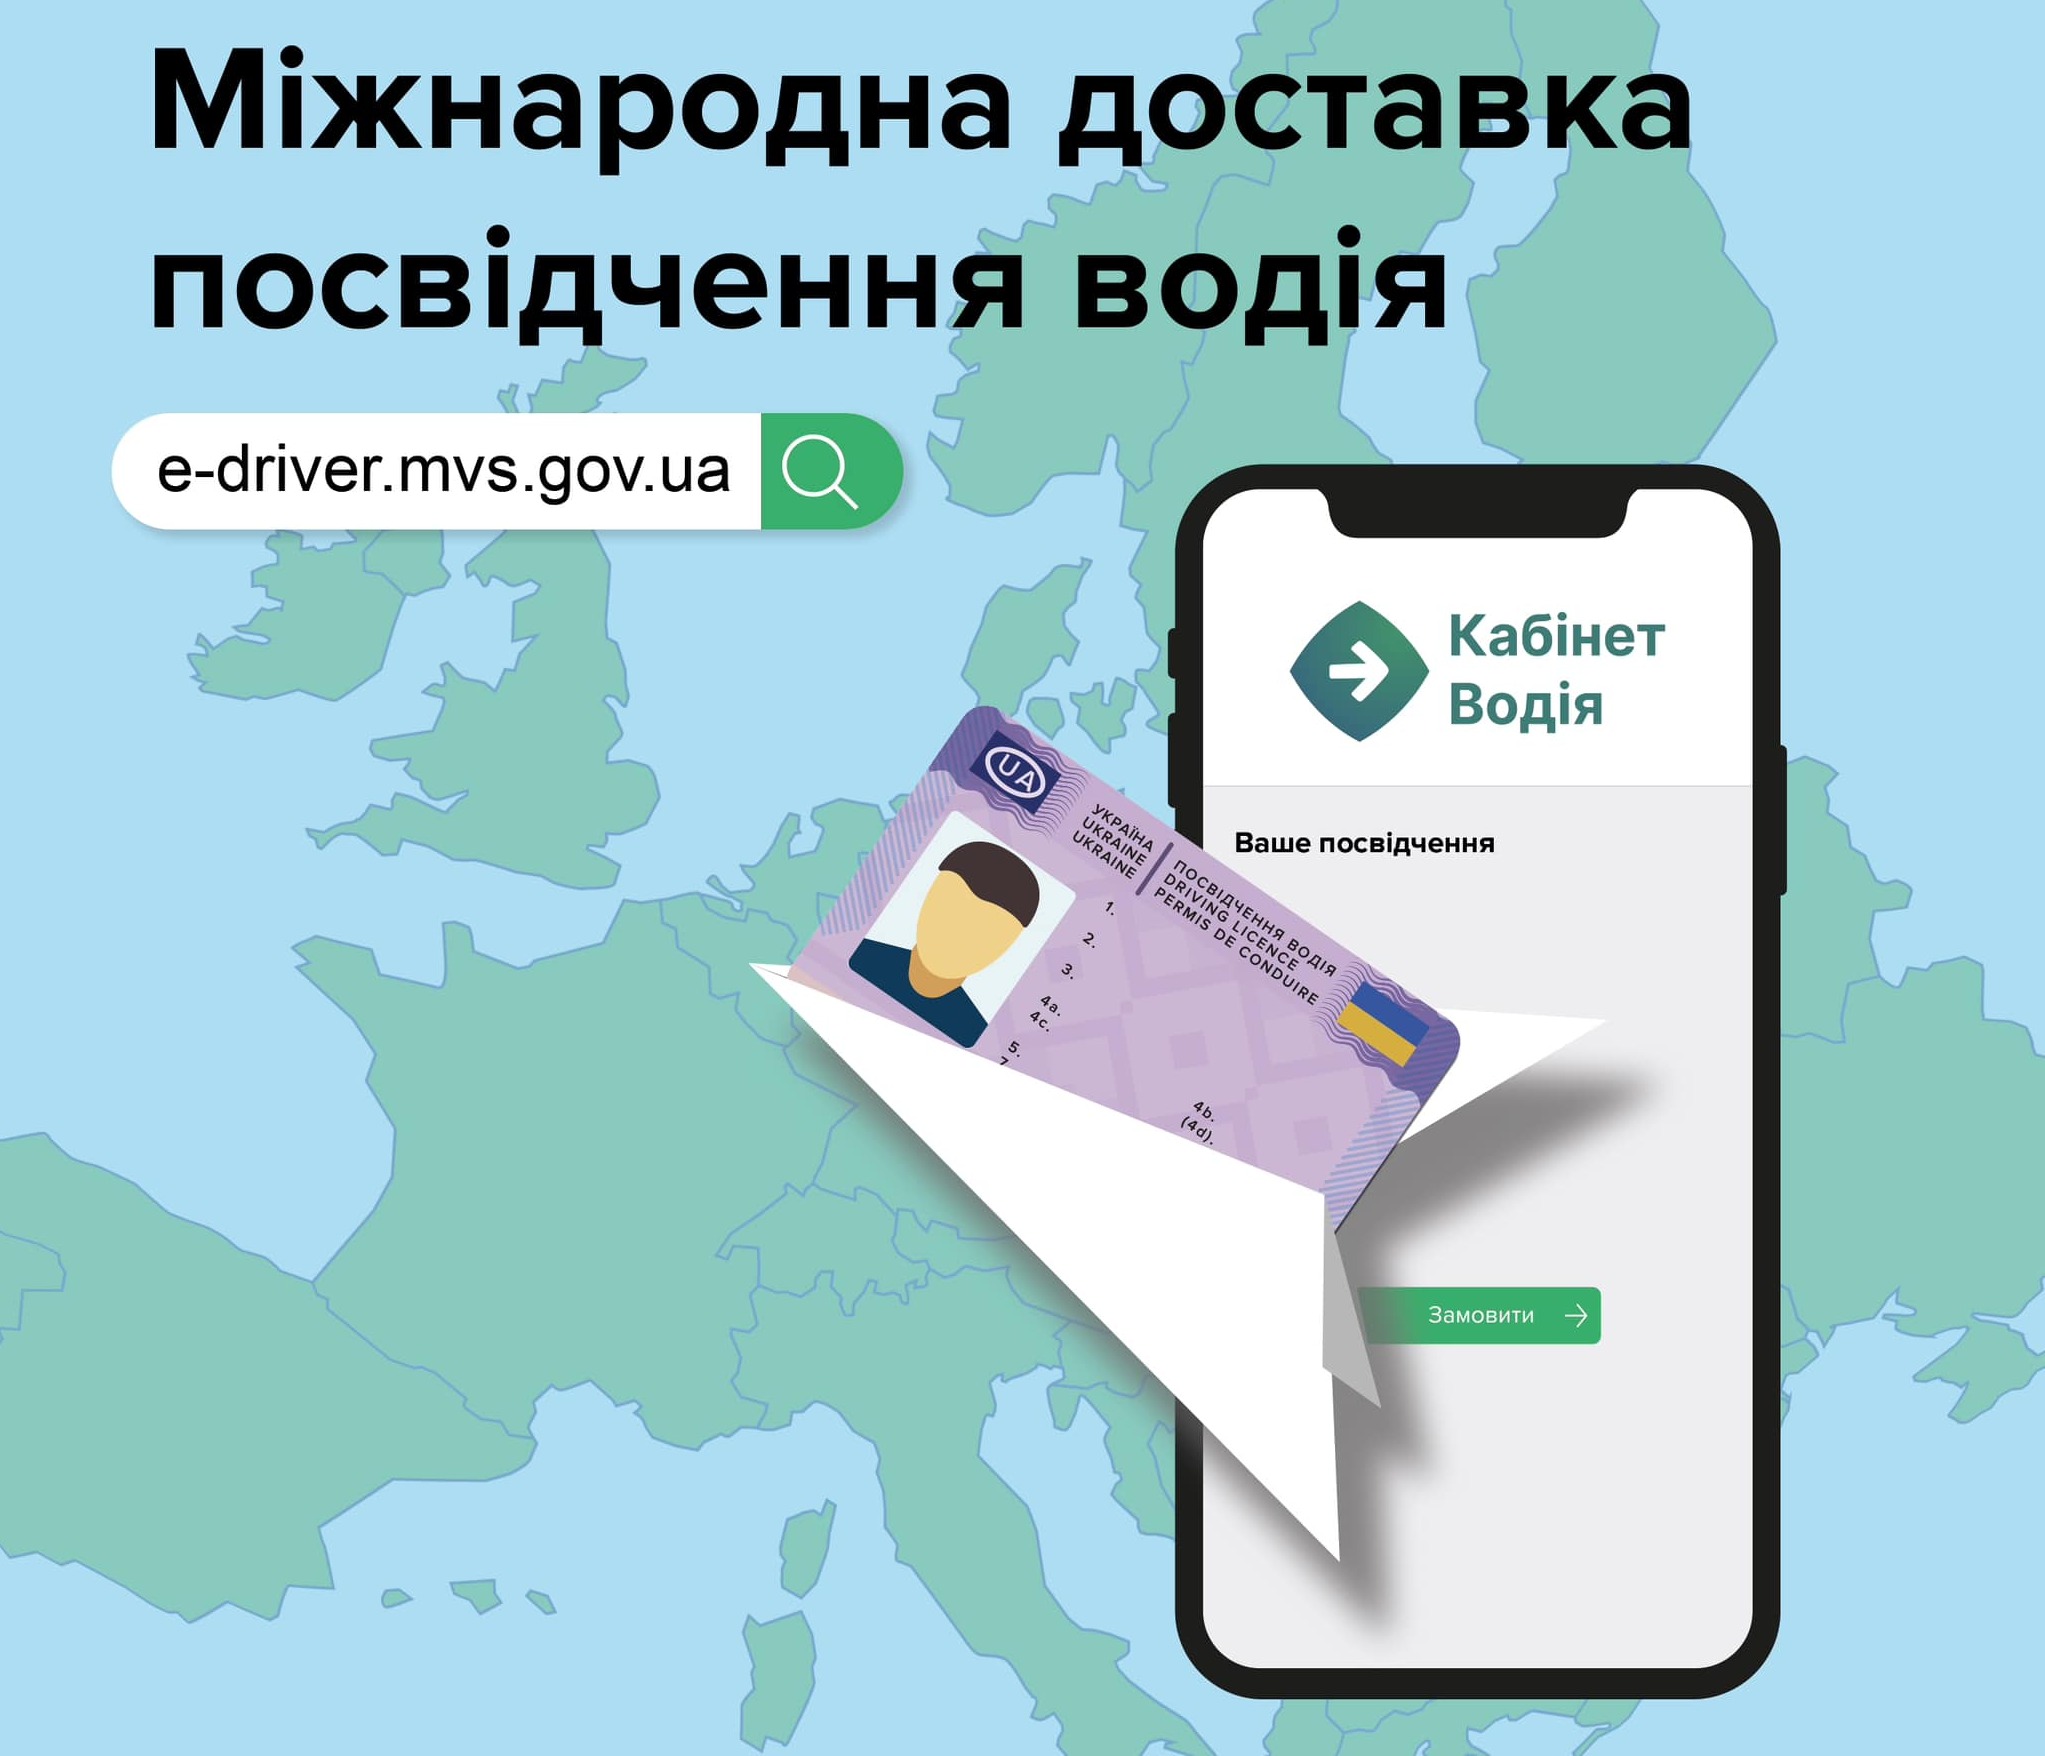 Укрпочта начала доставлять водительские удостоверения в Польшу